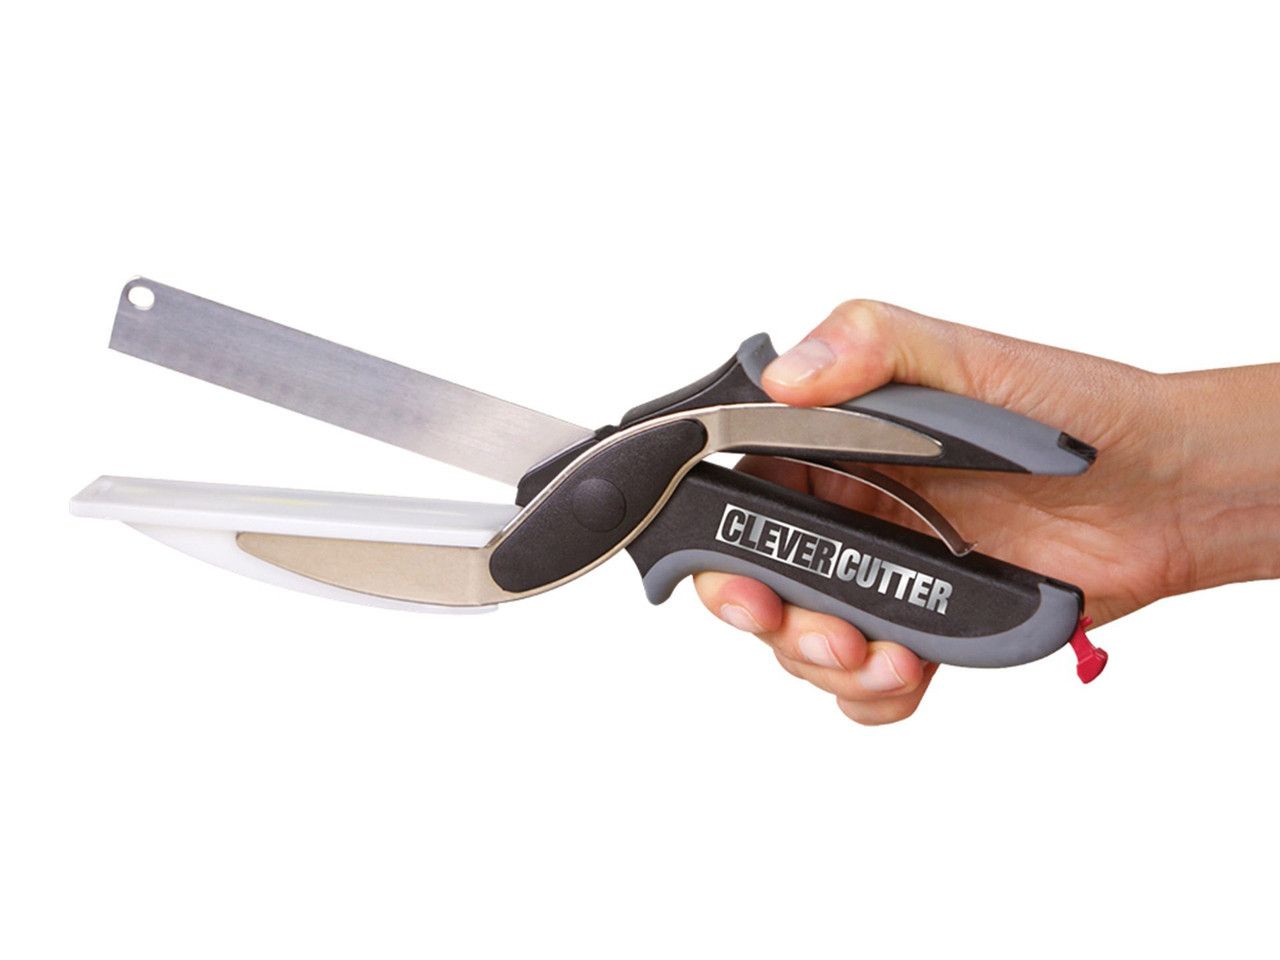 Универсальные кухонные ножницы Clever cutter / нож-ножницы 3 в 1 / умные ножницы